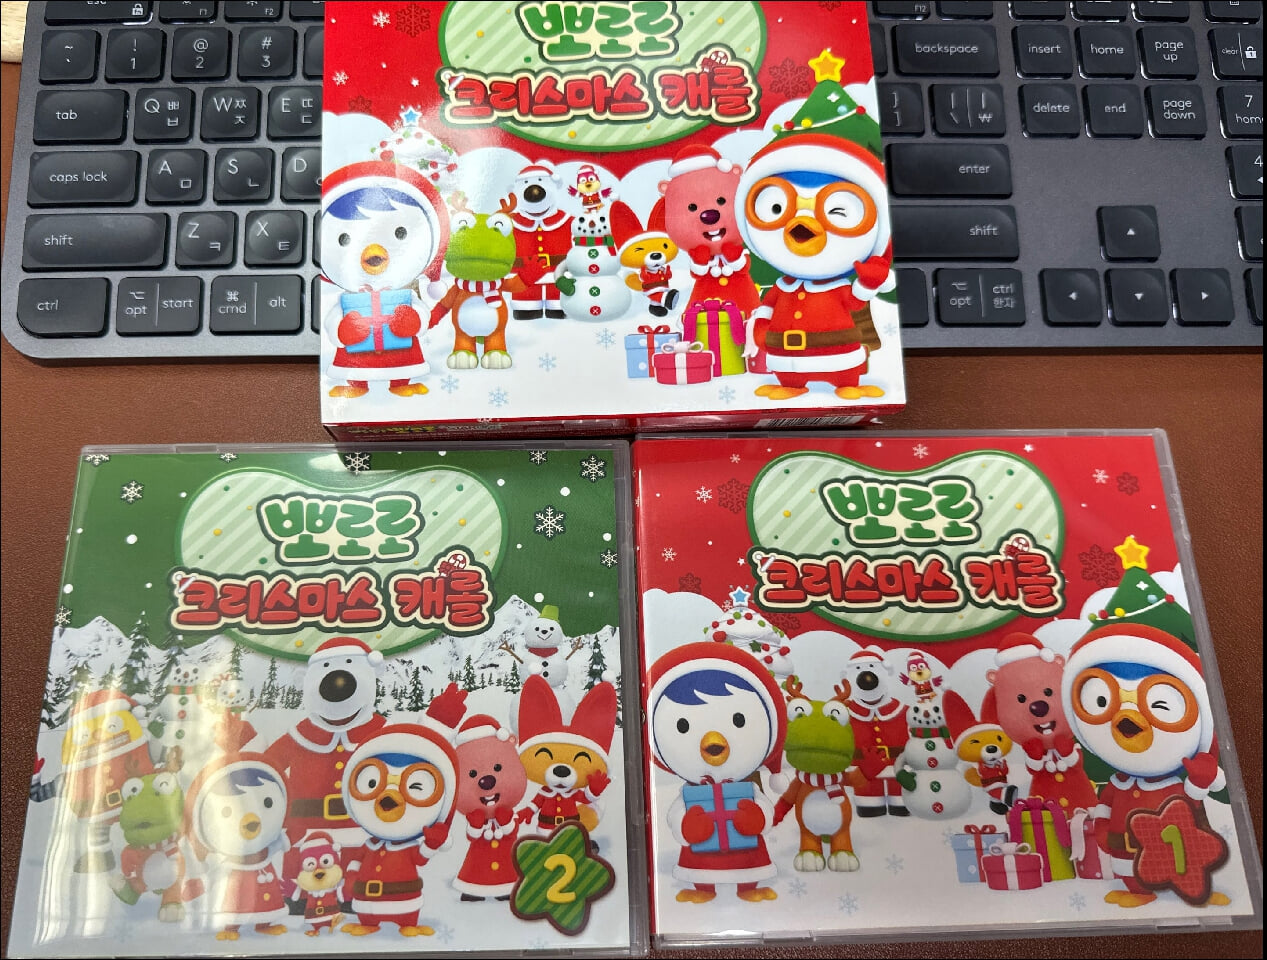 뽀로로 크리스마스 캐롤 - 한국어 버전 & 영어 버전 캐럴(2CD)